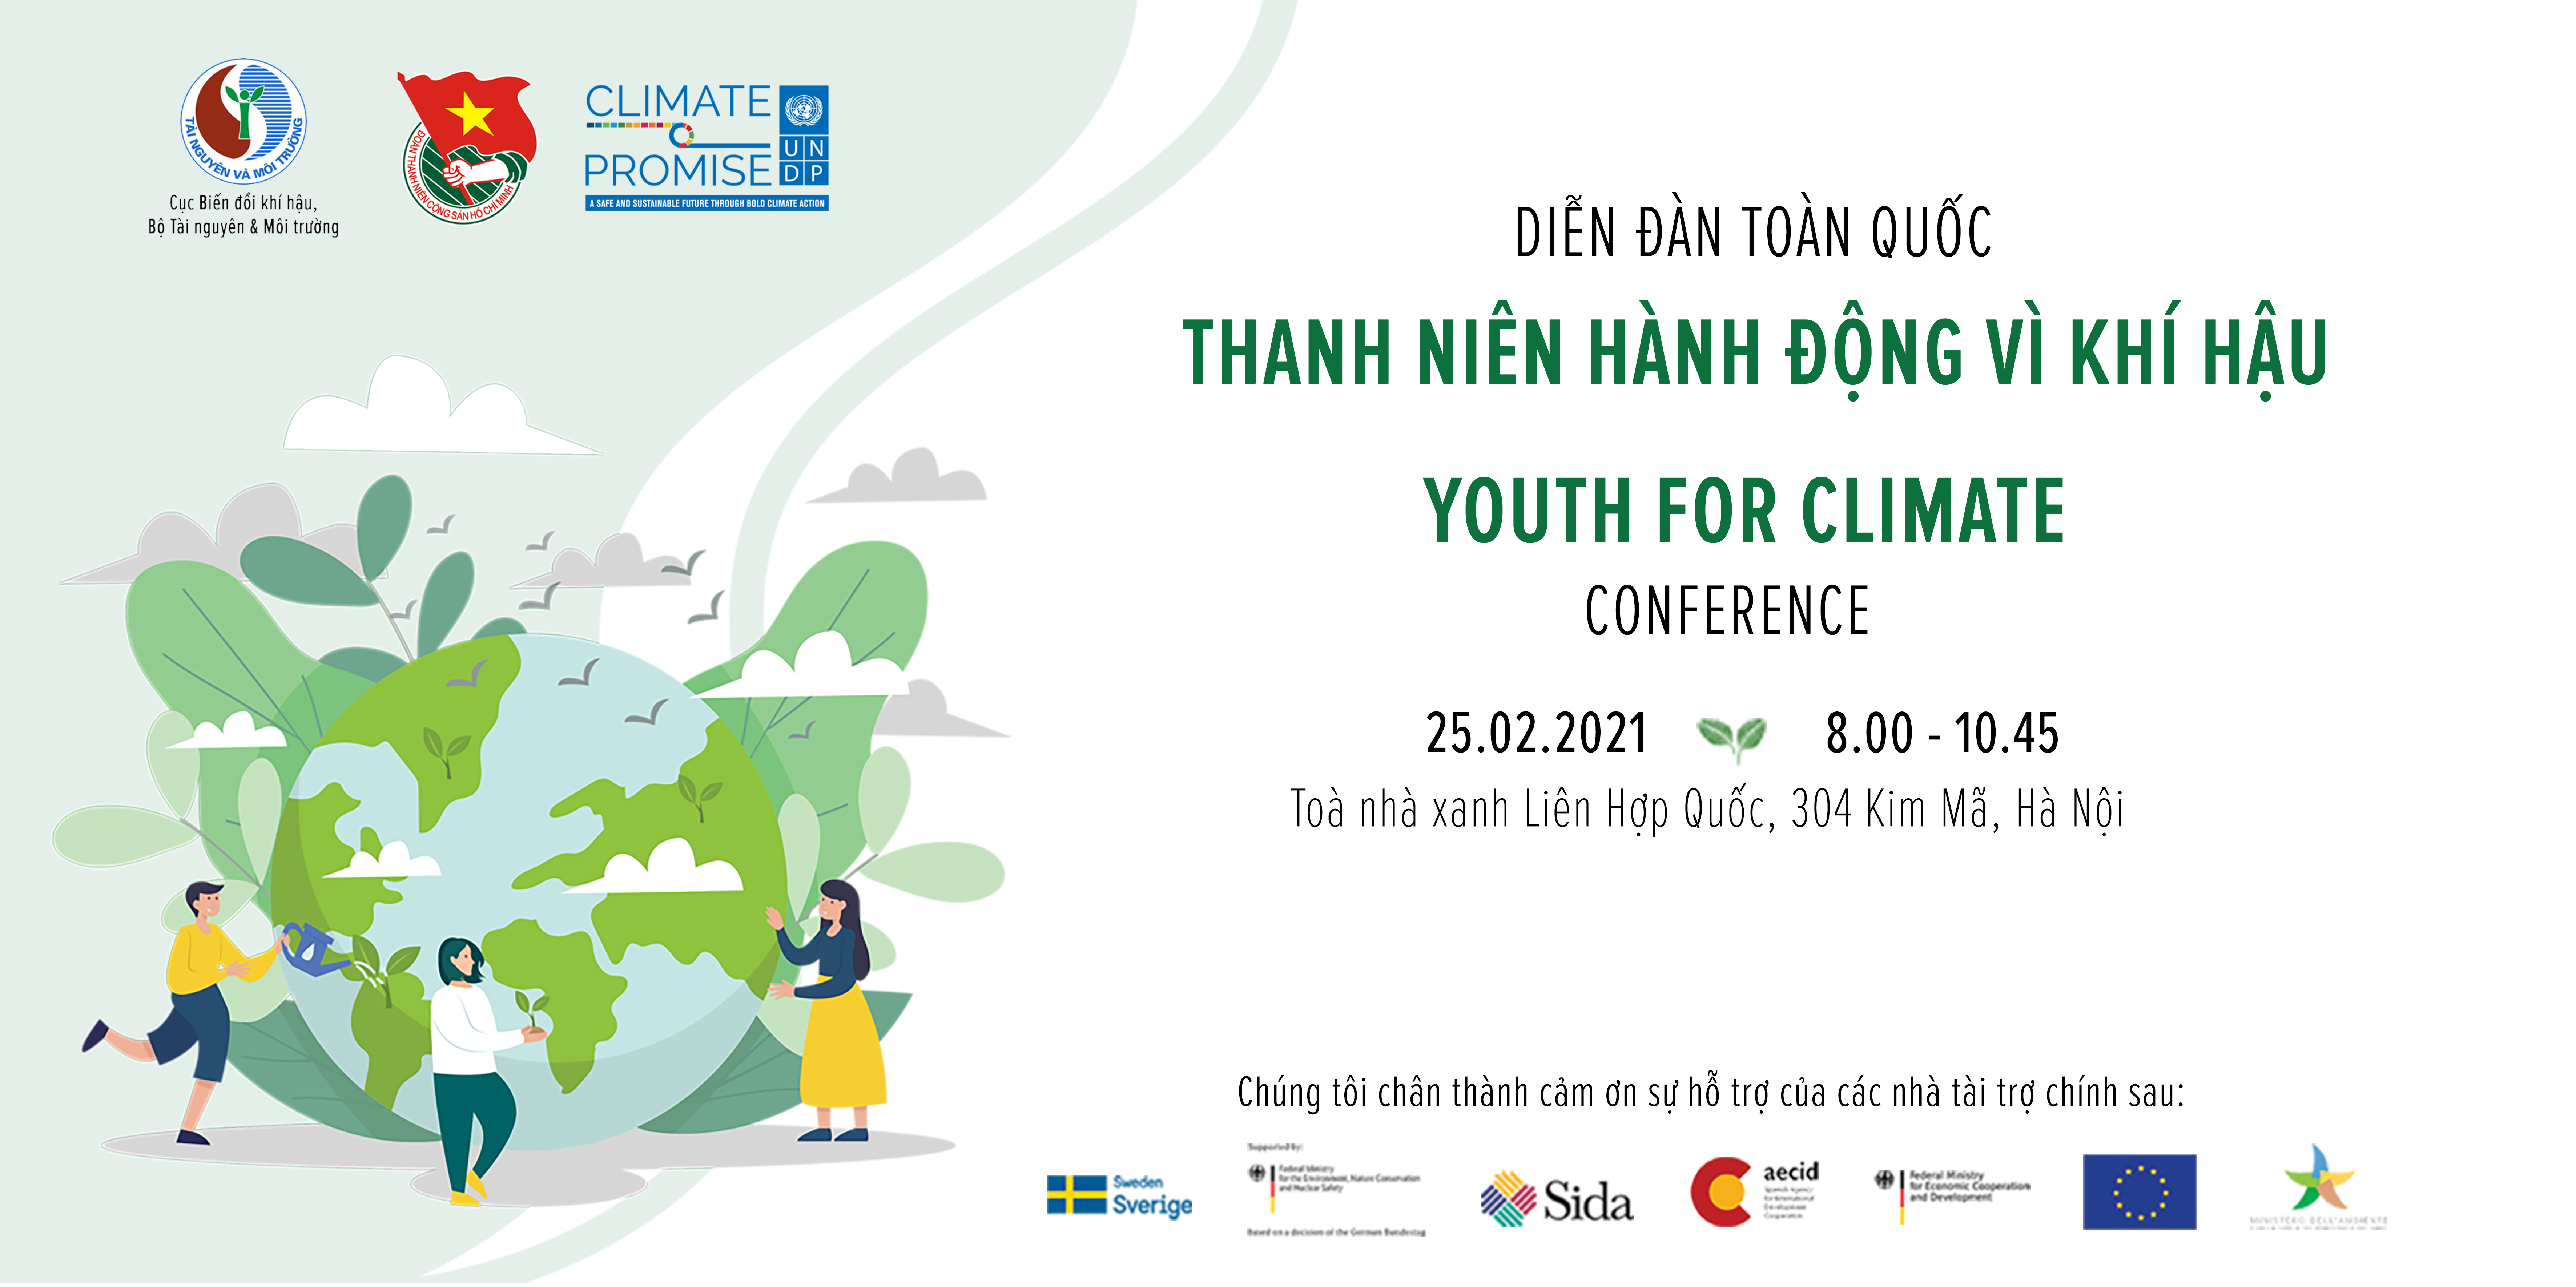 Hành động của thanh niên Việt Nam trong việc bảo vệ môi trường và bảo vệ khí hậu luôn được đánh giá cao. Họ chính là những người mang lại hy vọng cho tương lai của đất nước. Hãy đến và tham gia cùng chúng tôi, để cùng xây dựng một tương lai xanh sạch cho chúng ta.